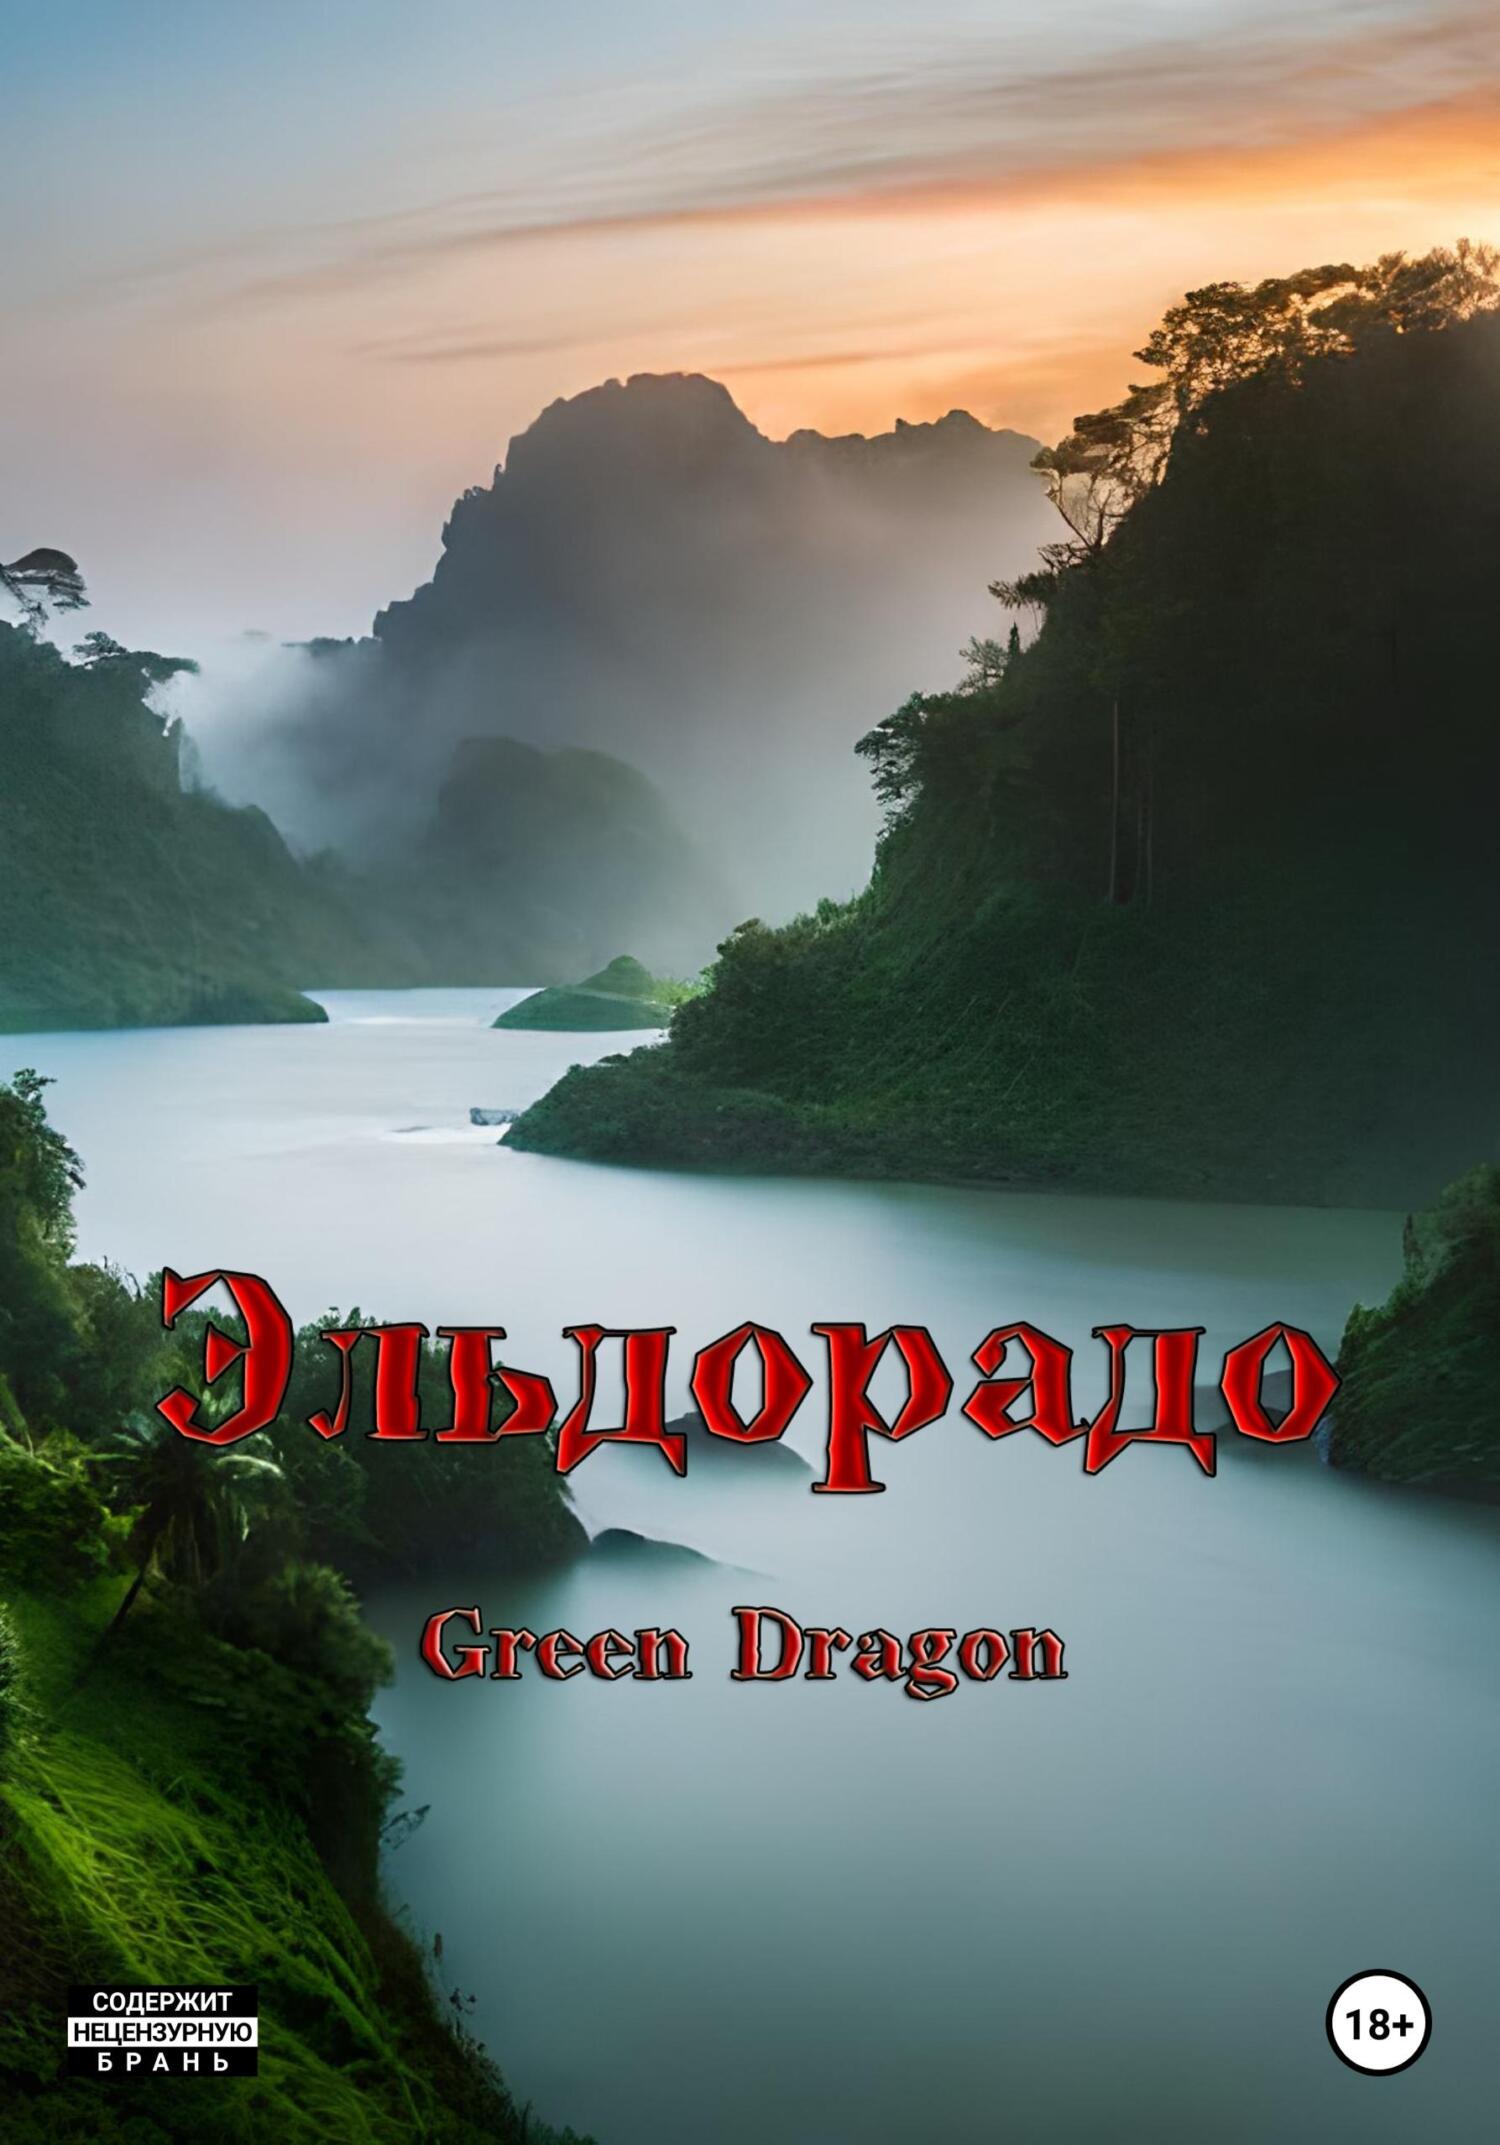 Эльдорадо - Dragon Green